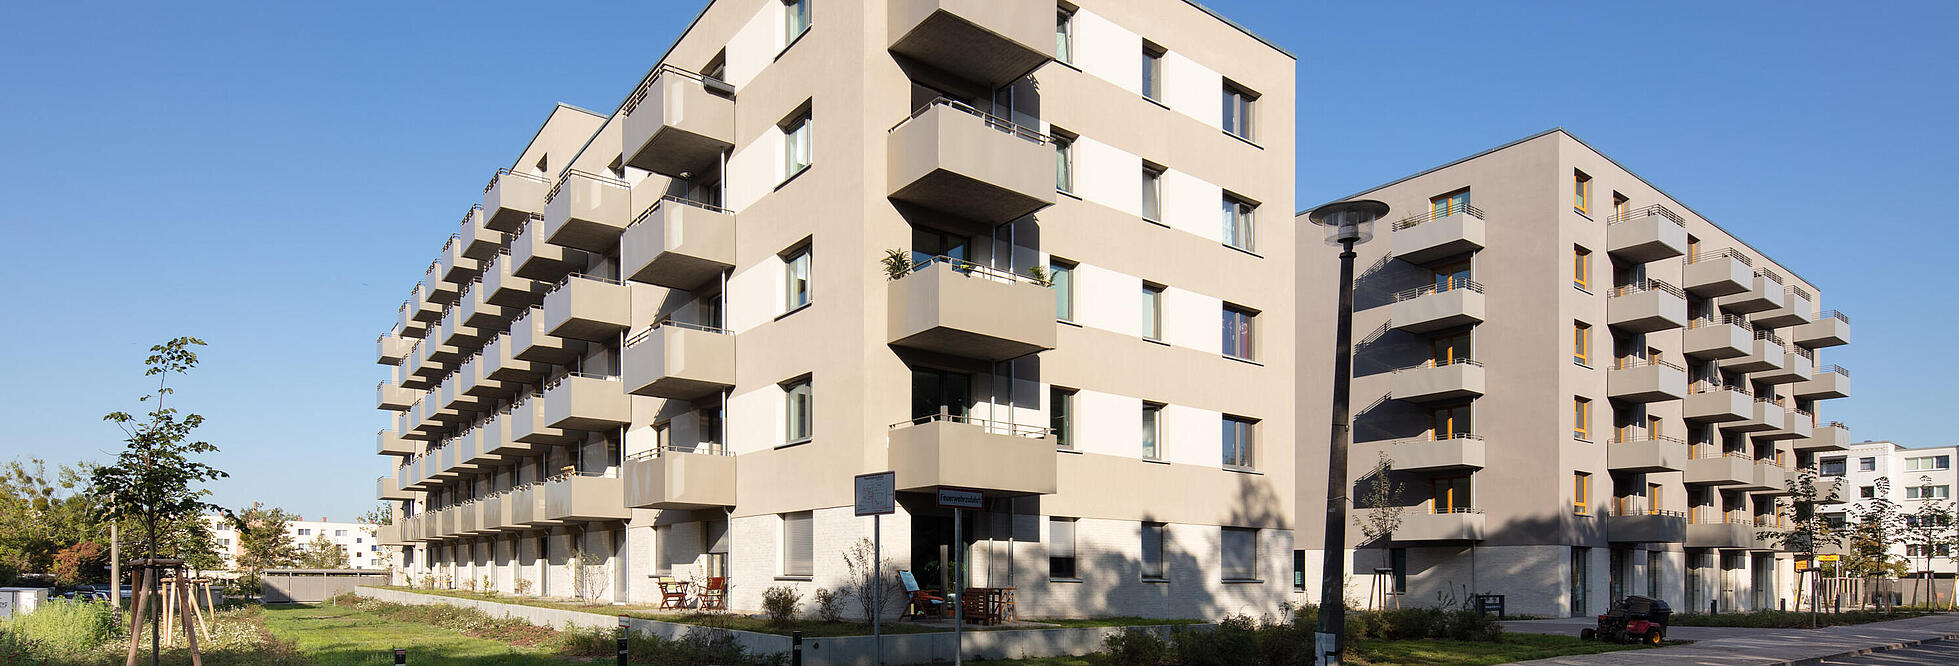 Zwei viergeschossige Gebäude mit Balkonen